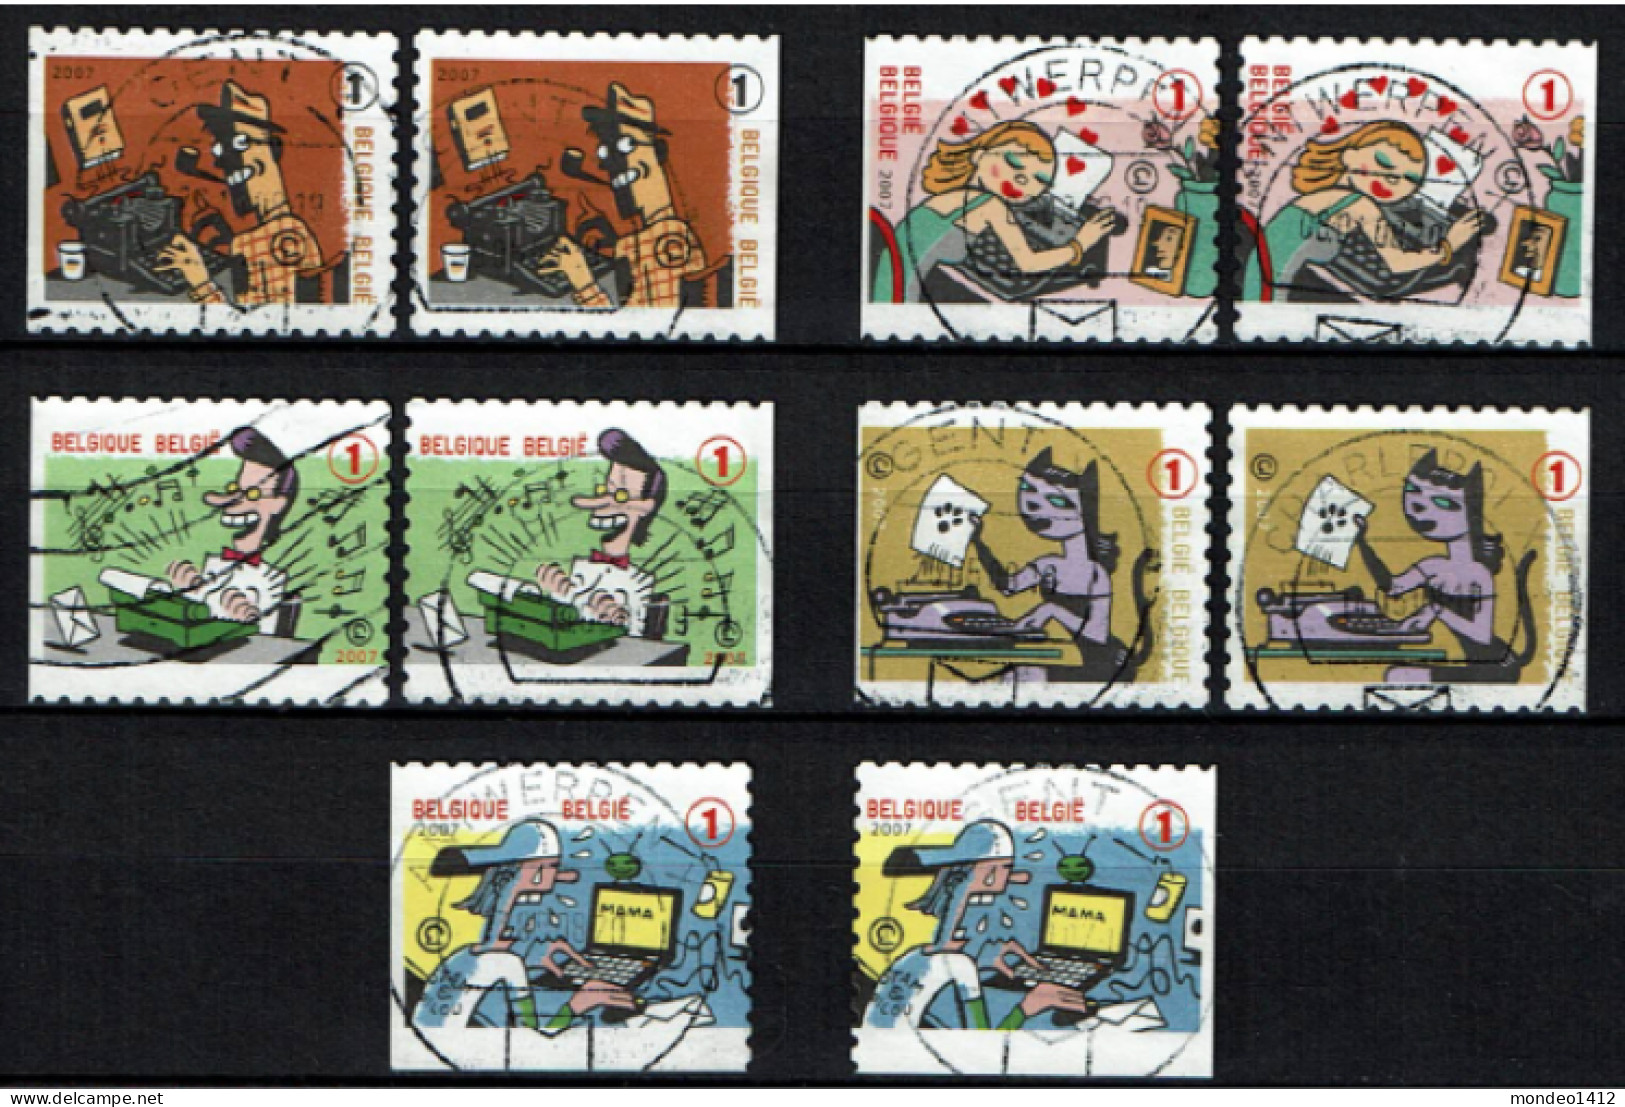 België OBP 3715/3719 - Zegels Uit Boekje B79 - Schrijfmachines, Les Machines à écrire, Typewriters - Used Stamps